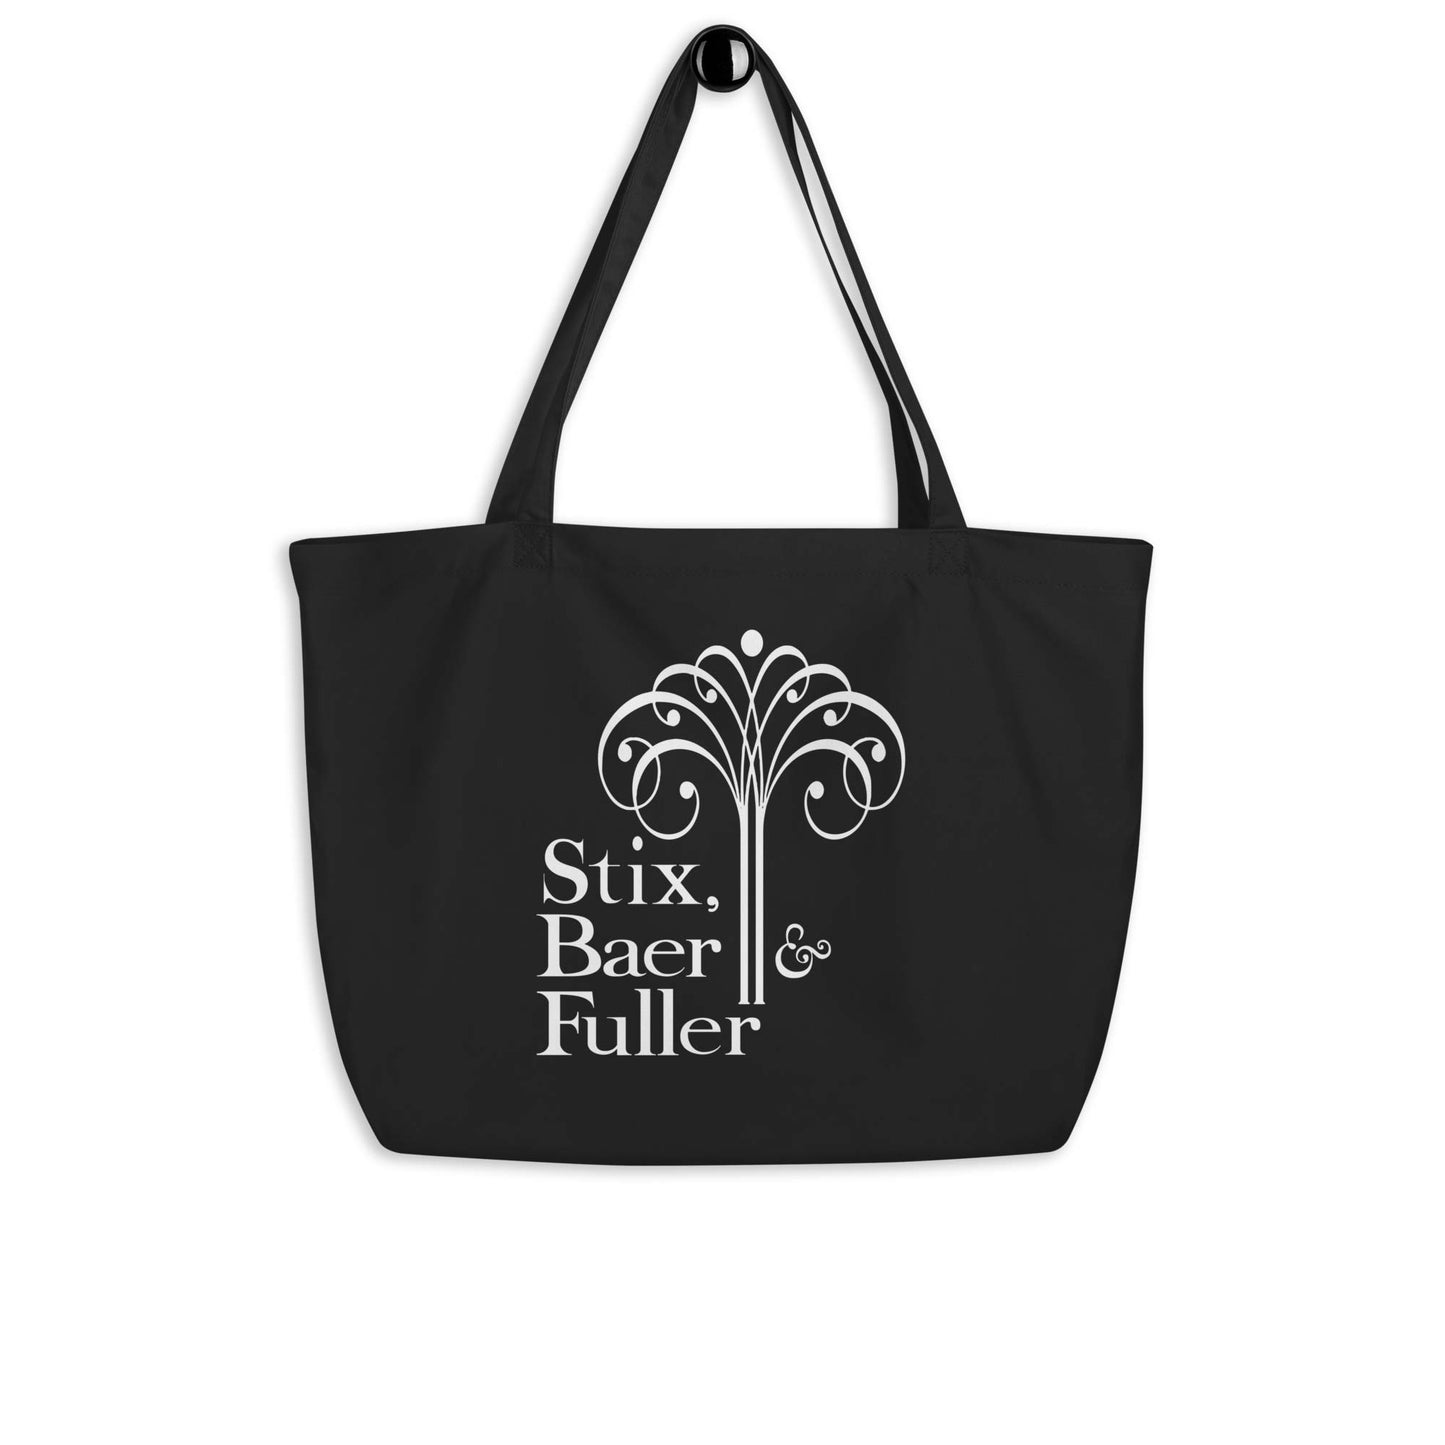 Stix, Baer & Fuller St. Louis Large organic tote bag